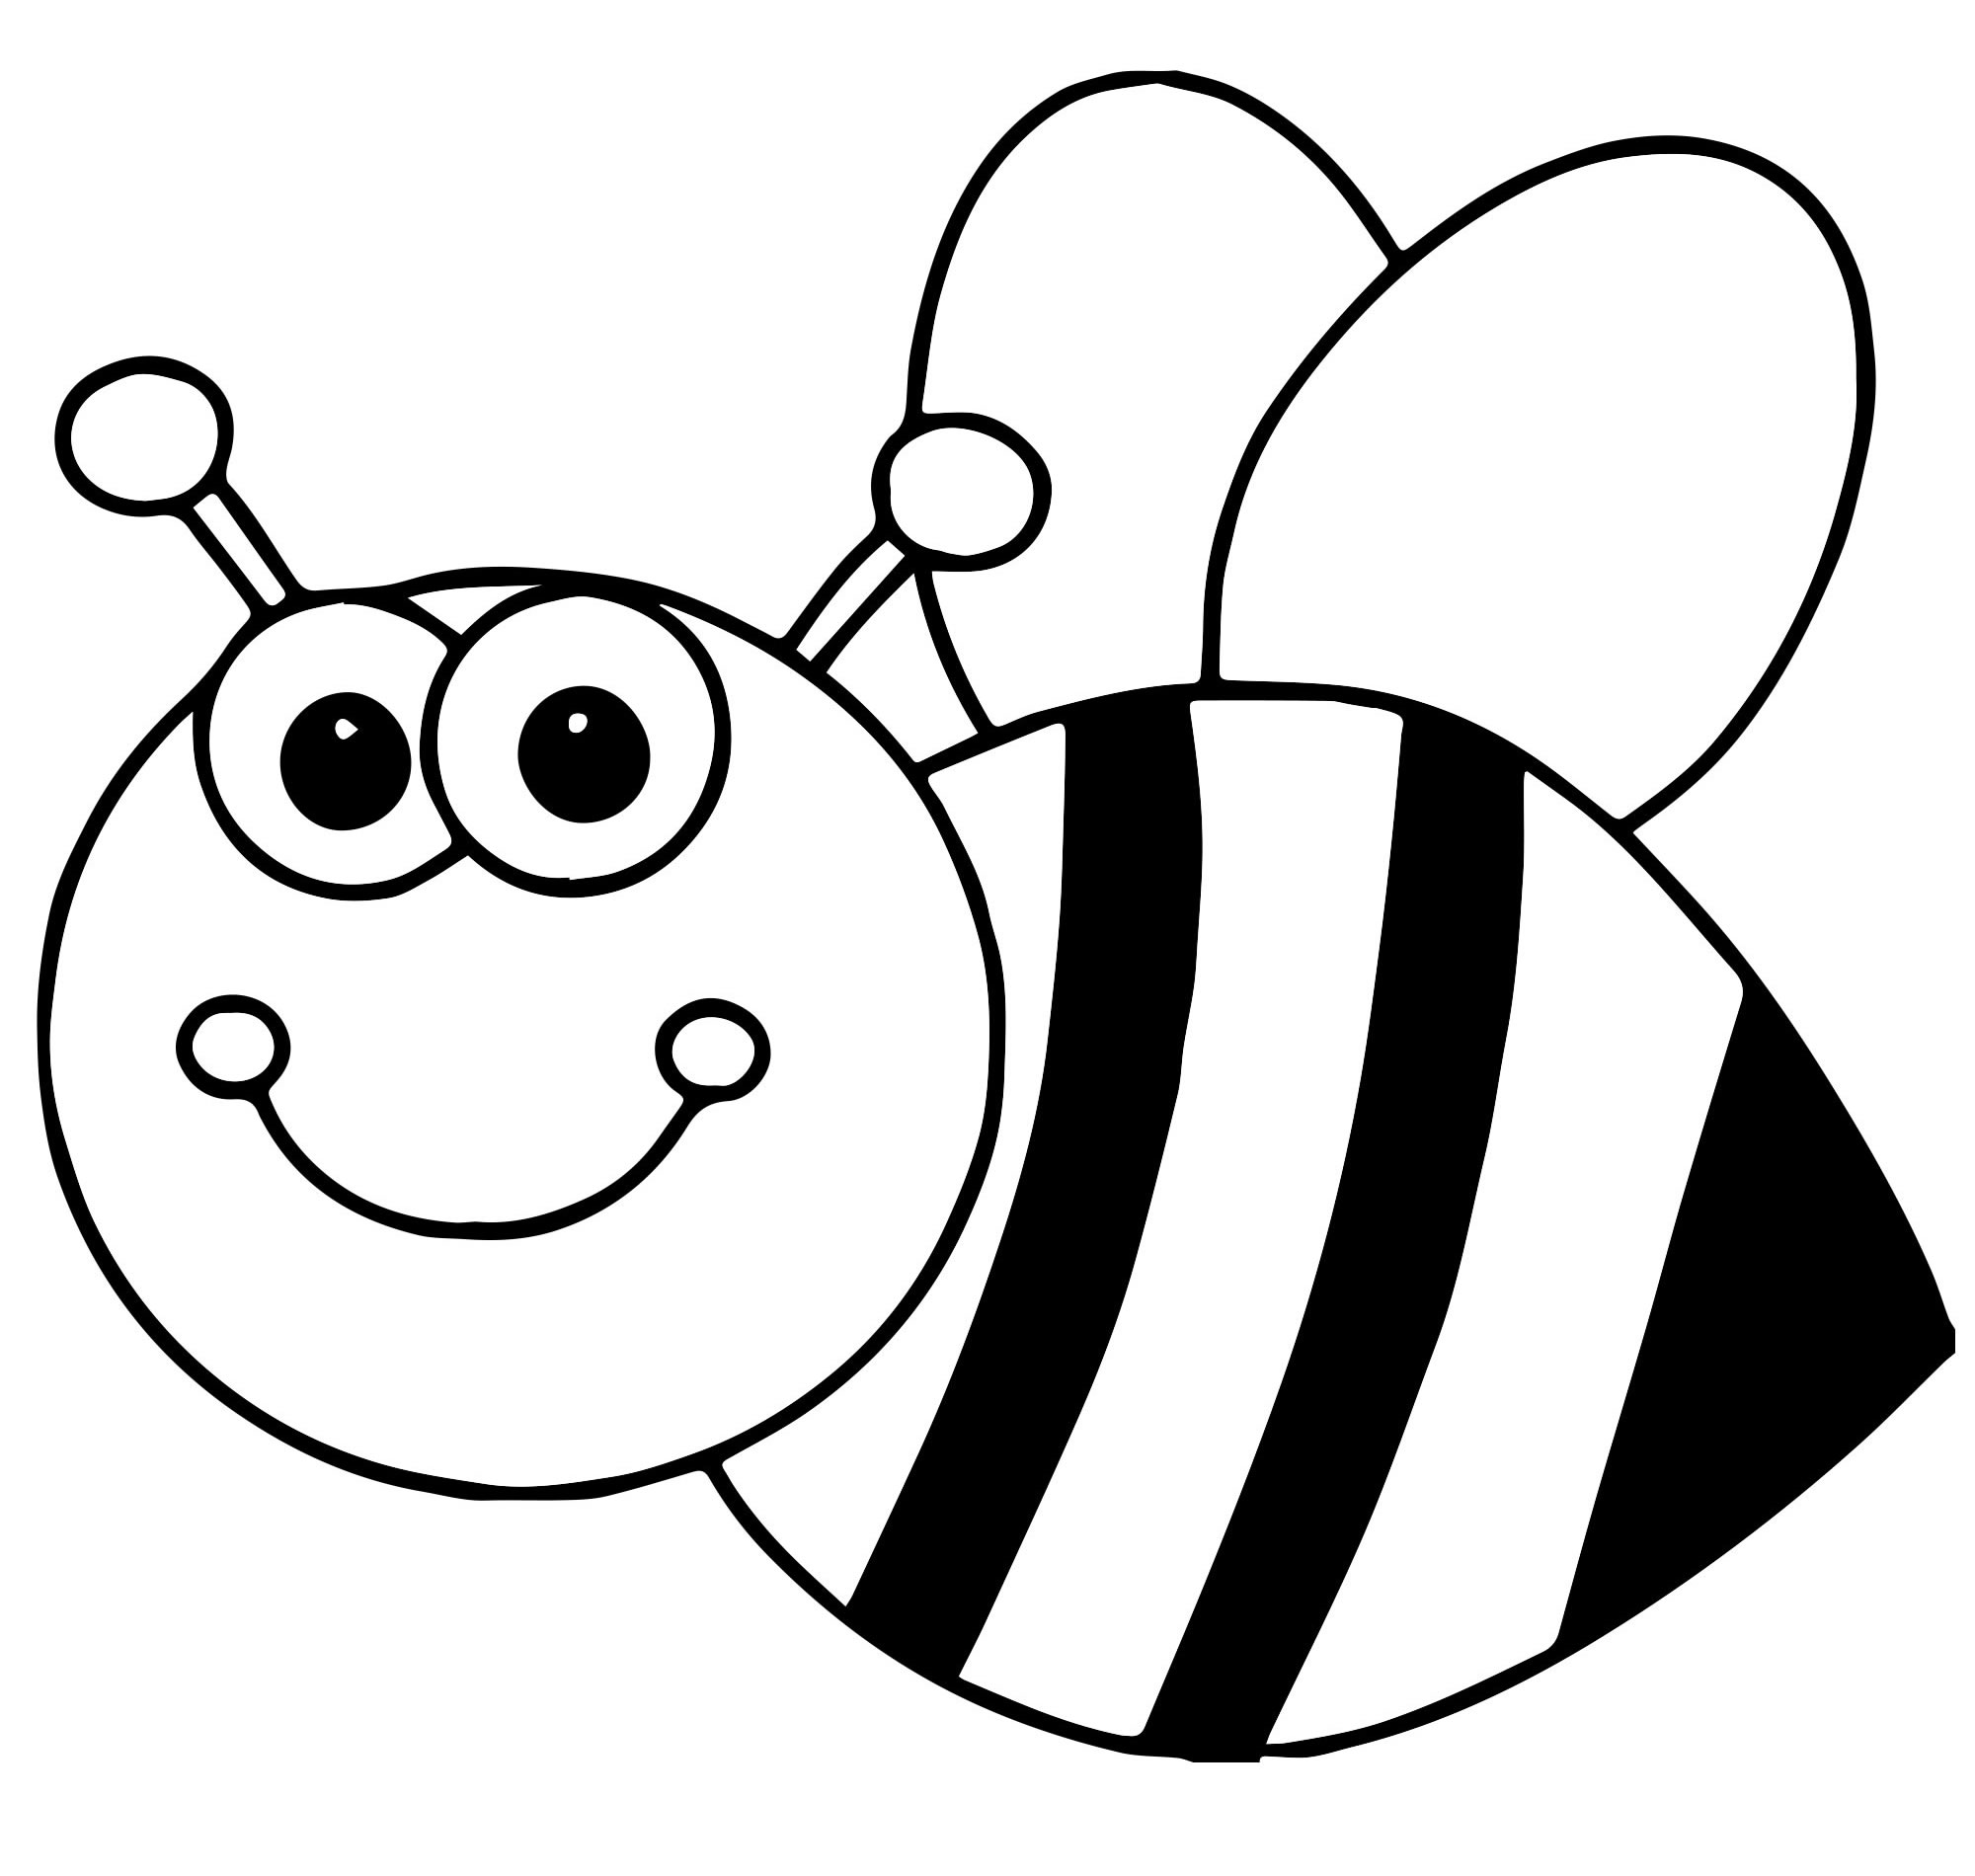 Раскраска Пчелка с медом - распечатать бесплатно